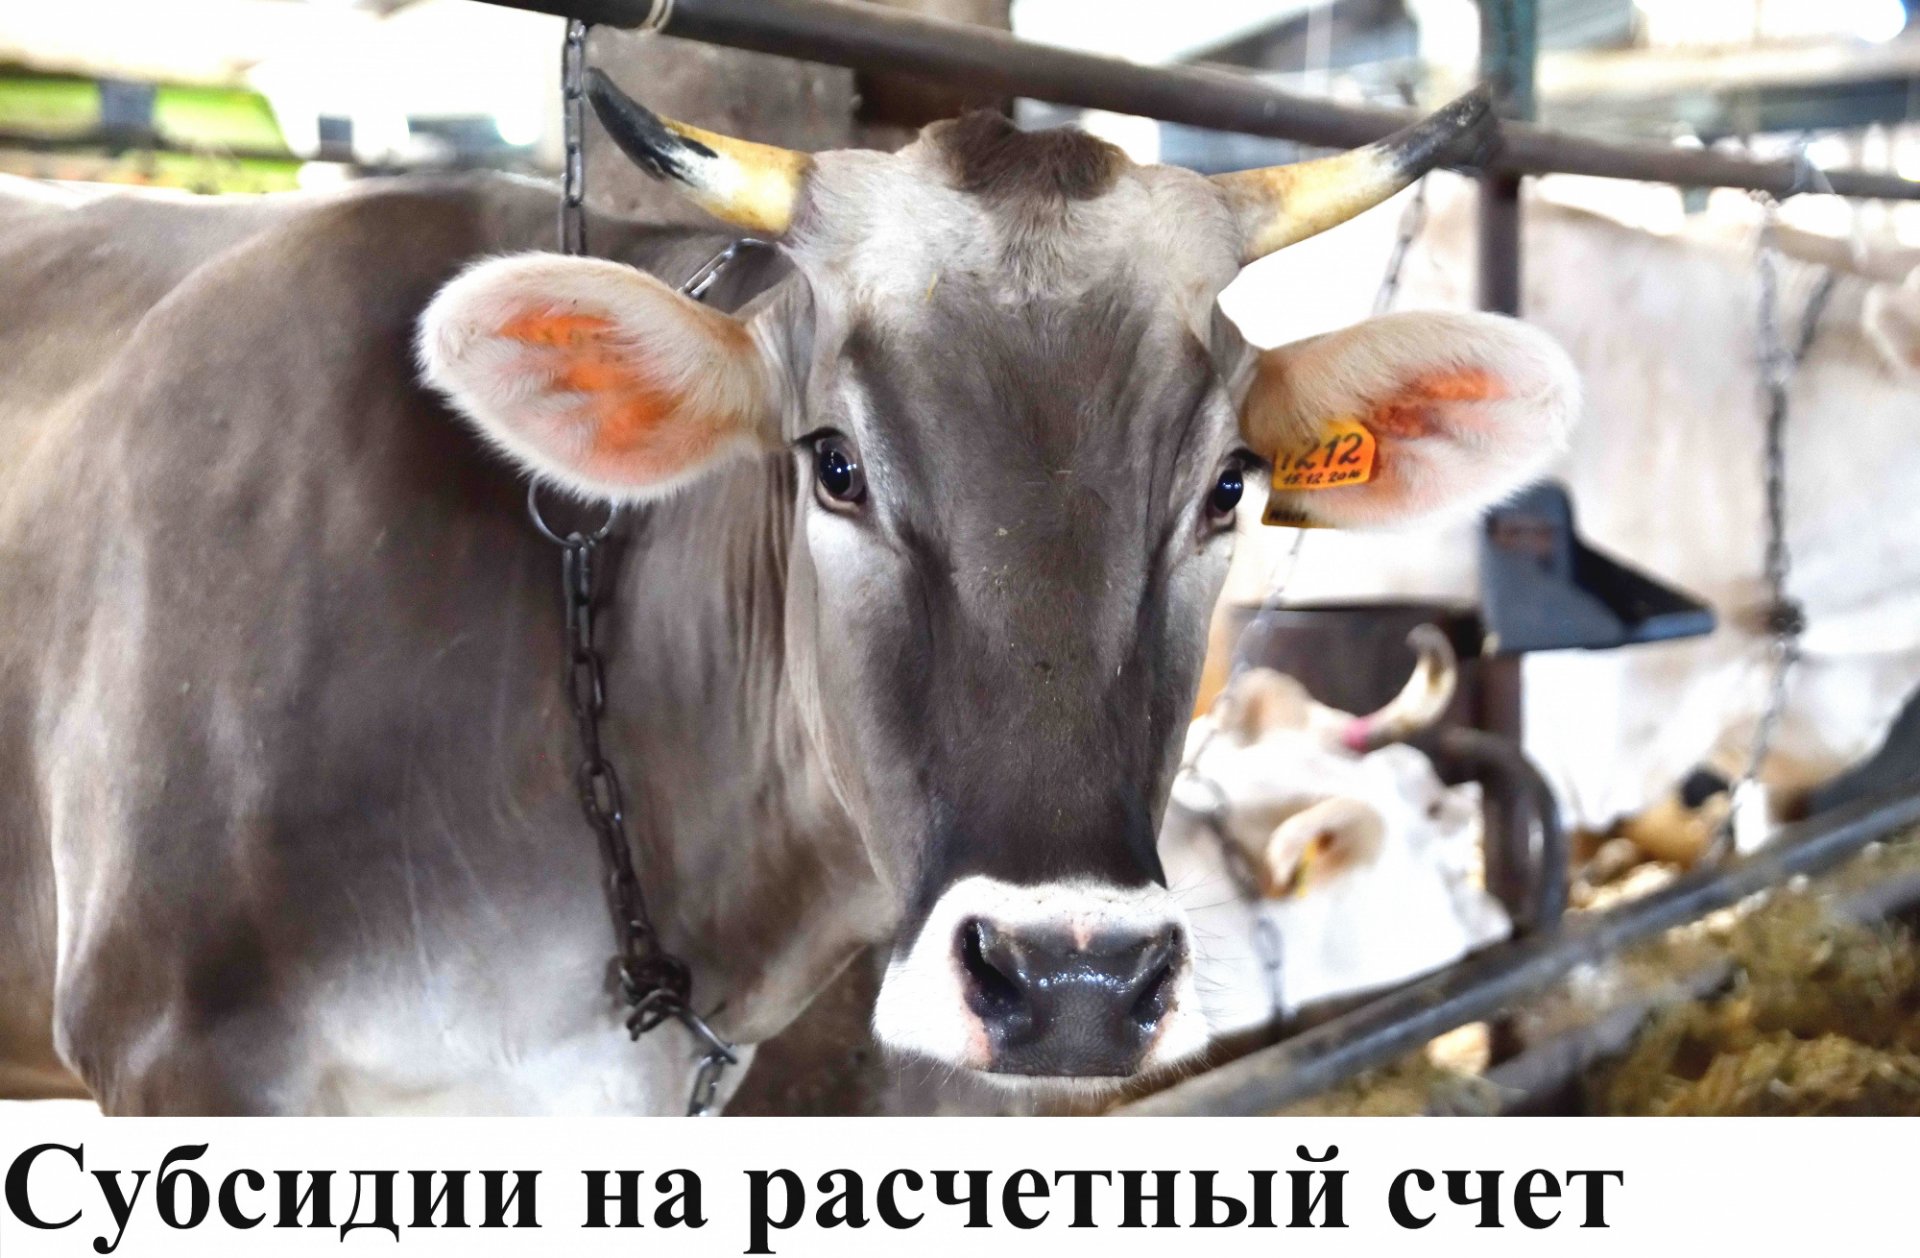 Костромским аграриям упростили порядок получения субсидий